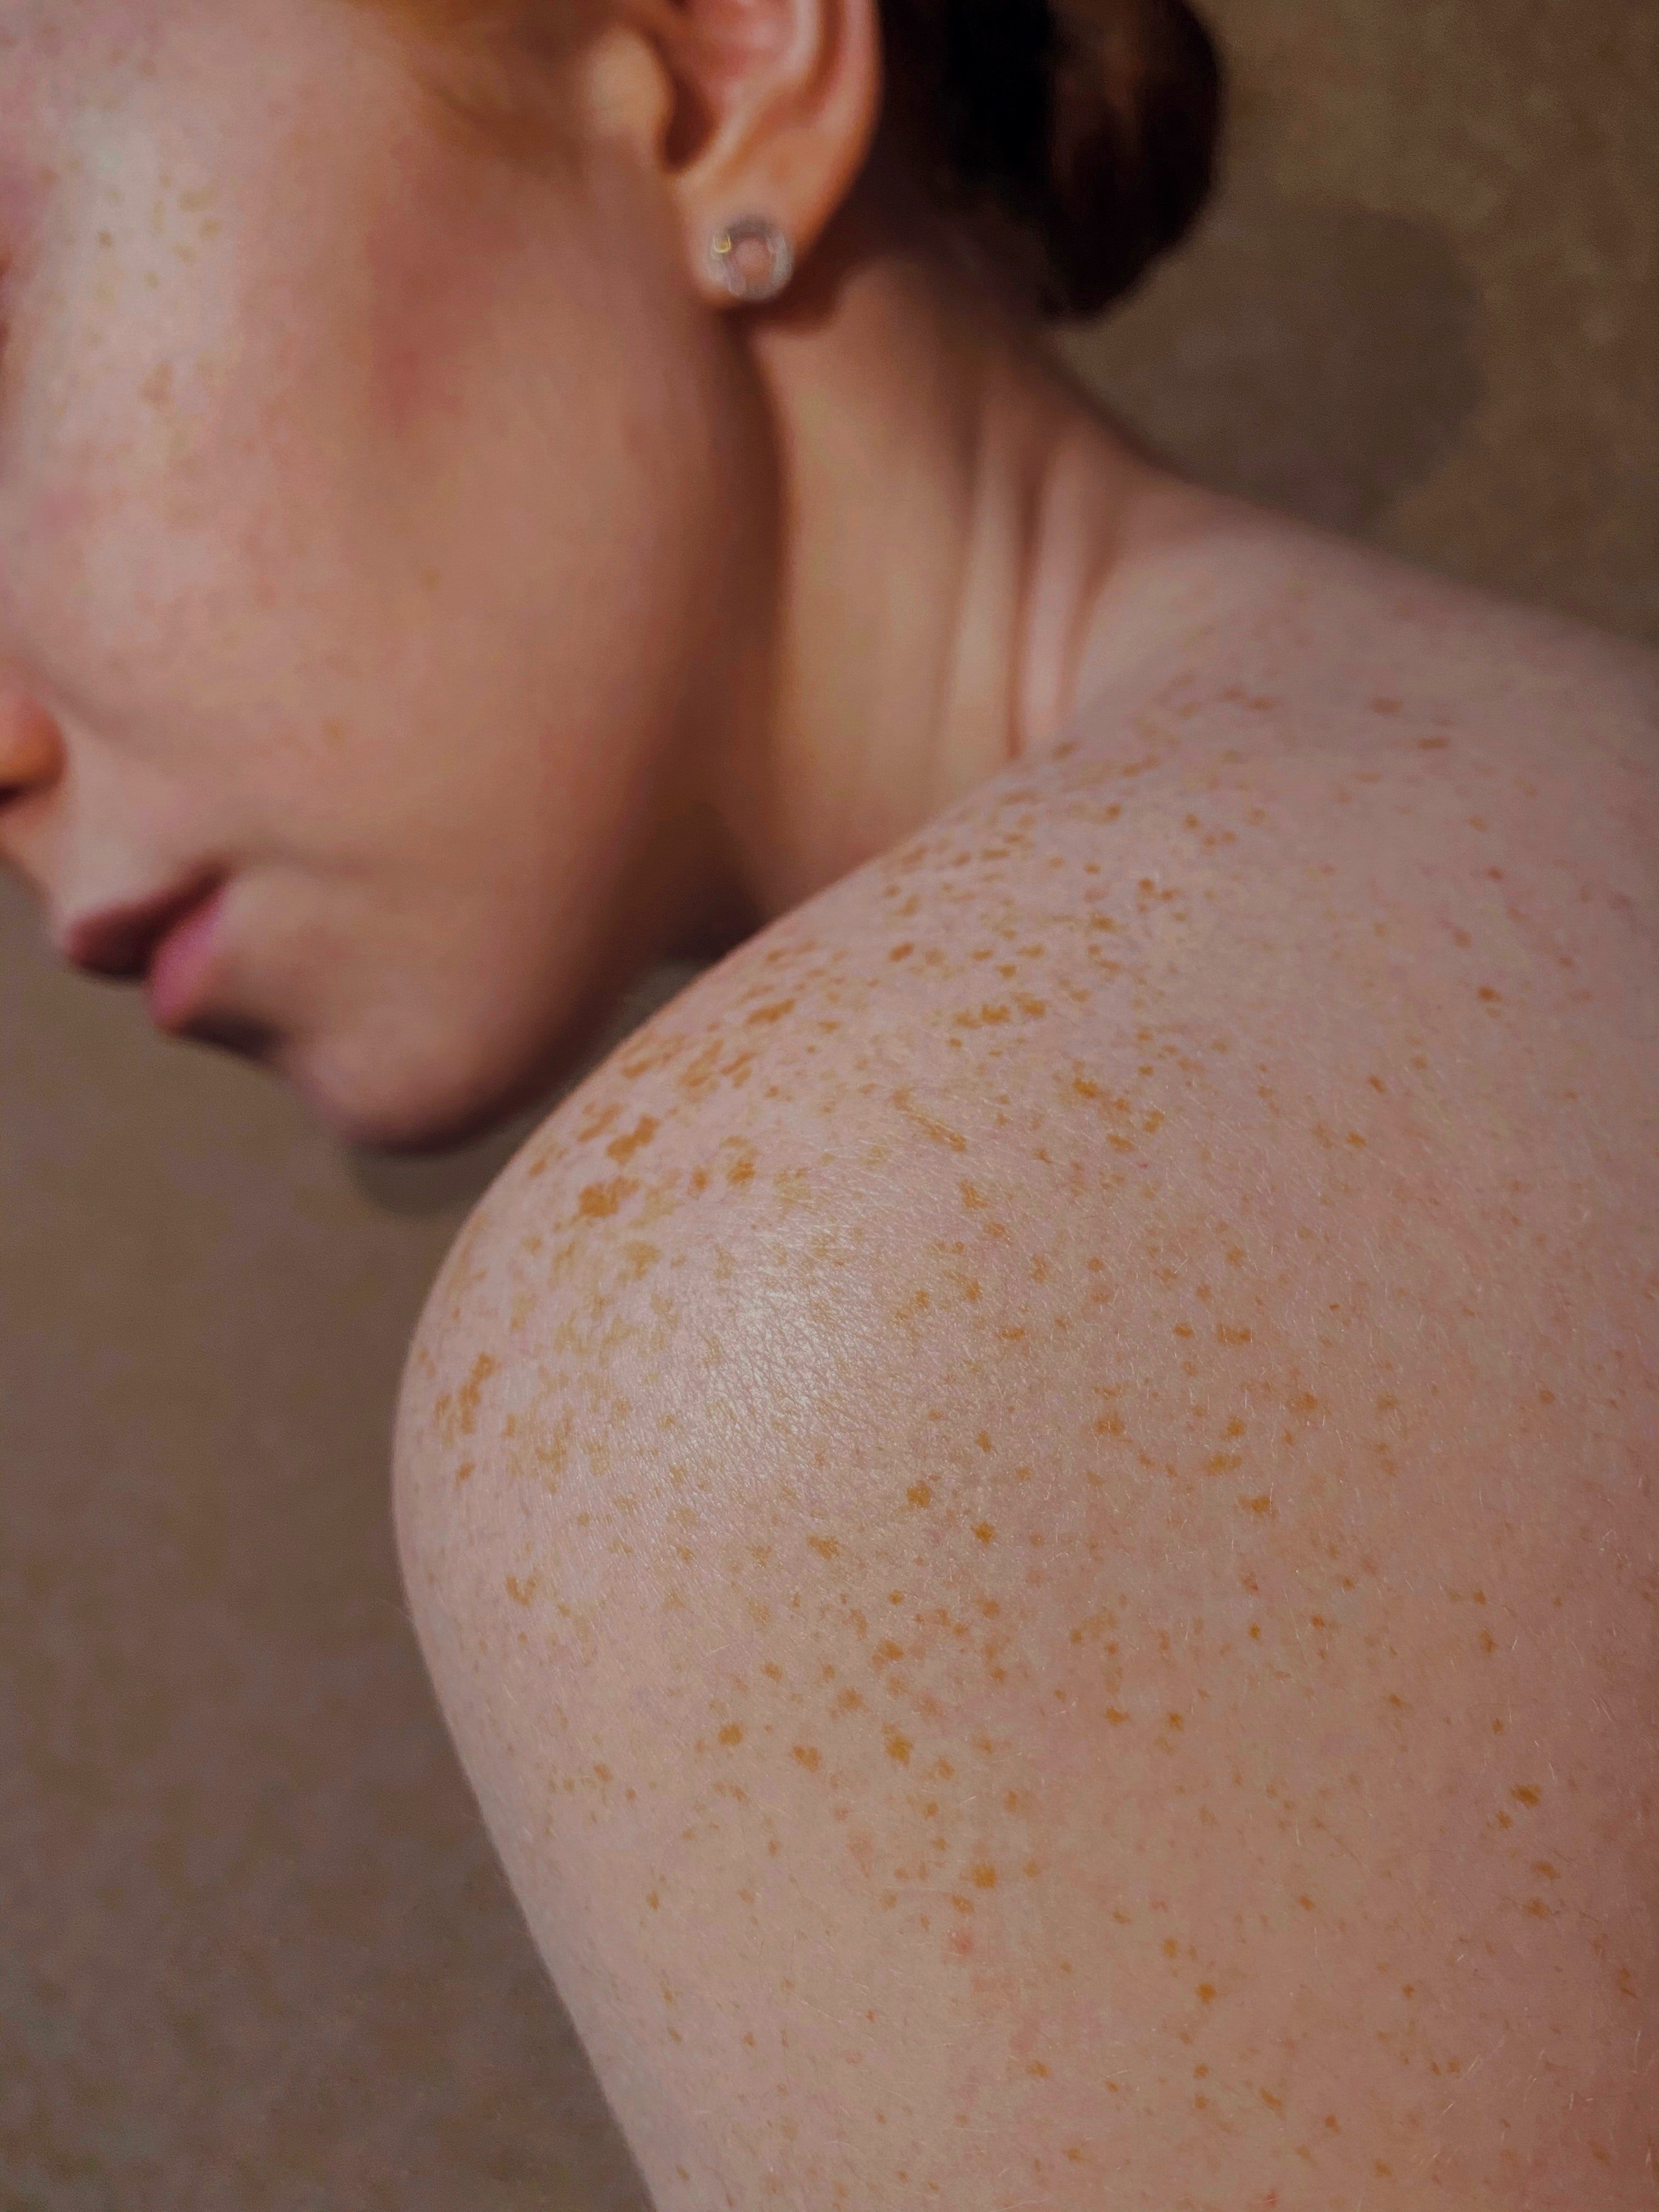 Prevenció i tractaments per evitar les taques a la pell pel sol